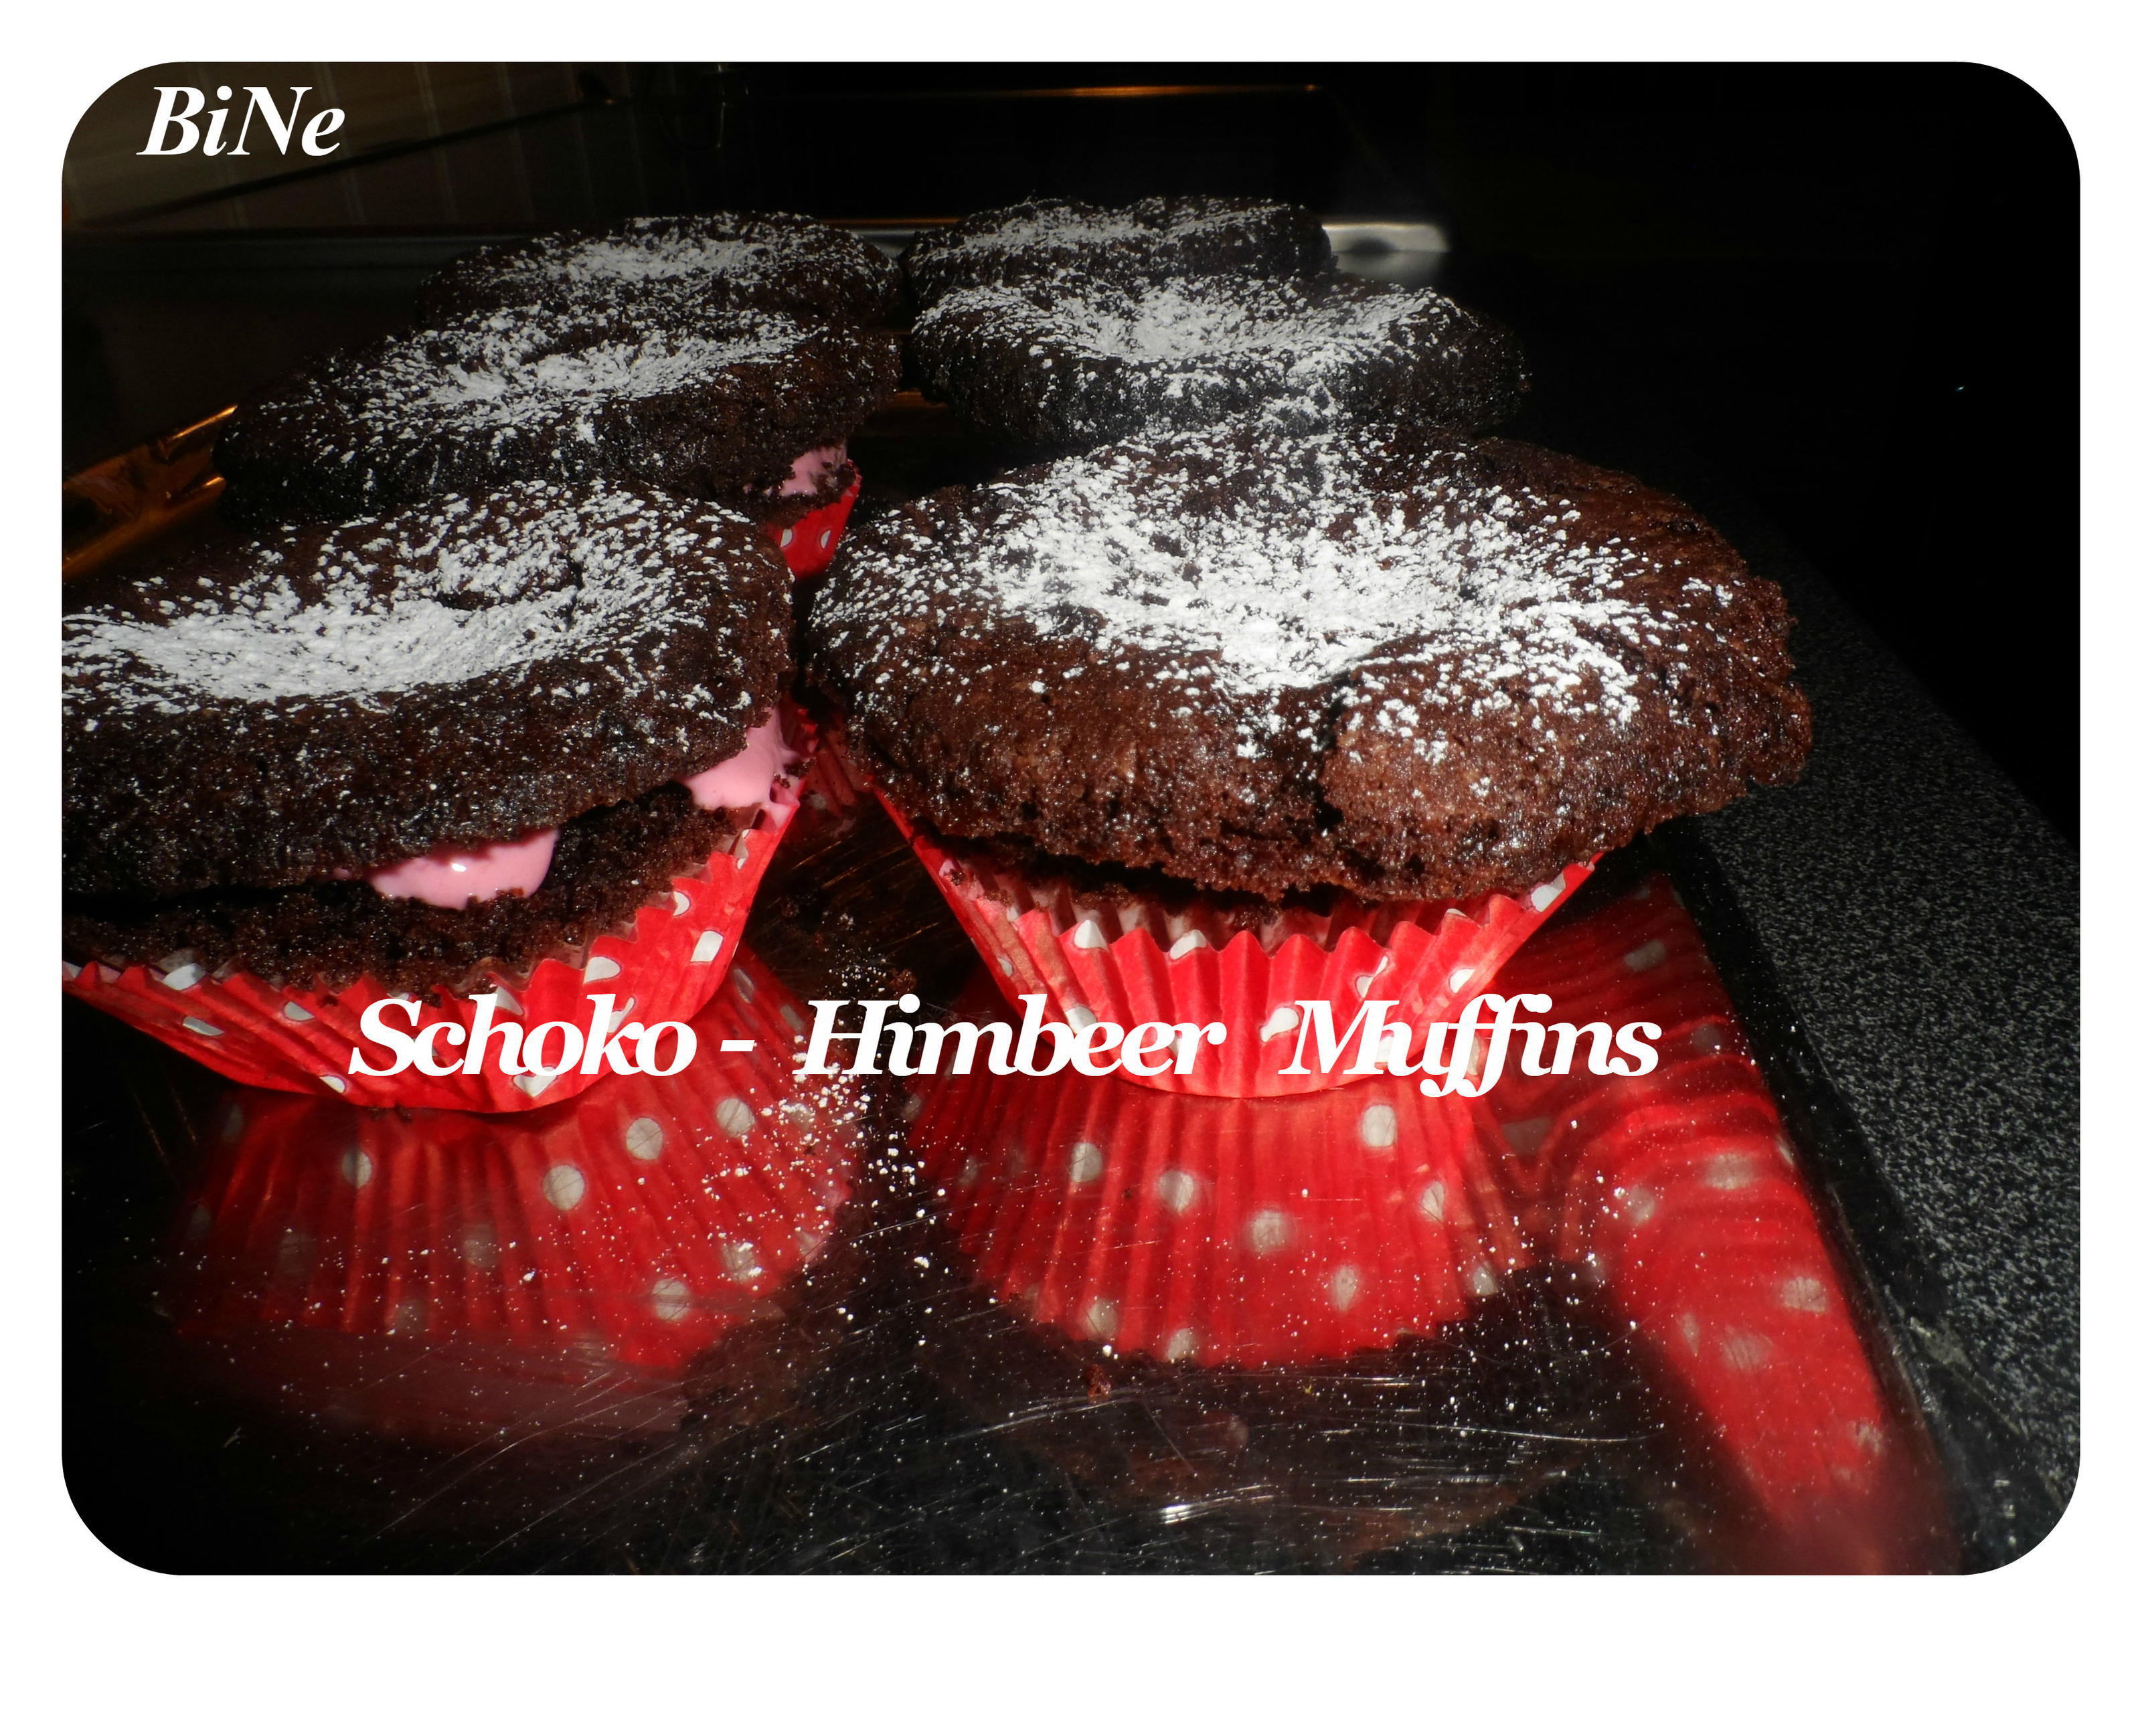 BiNe` S SCHOKO - HIMBEER MUFFINS - Rezept Eingereicht von Bine13100